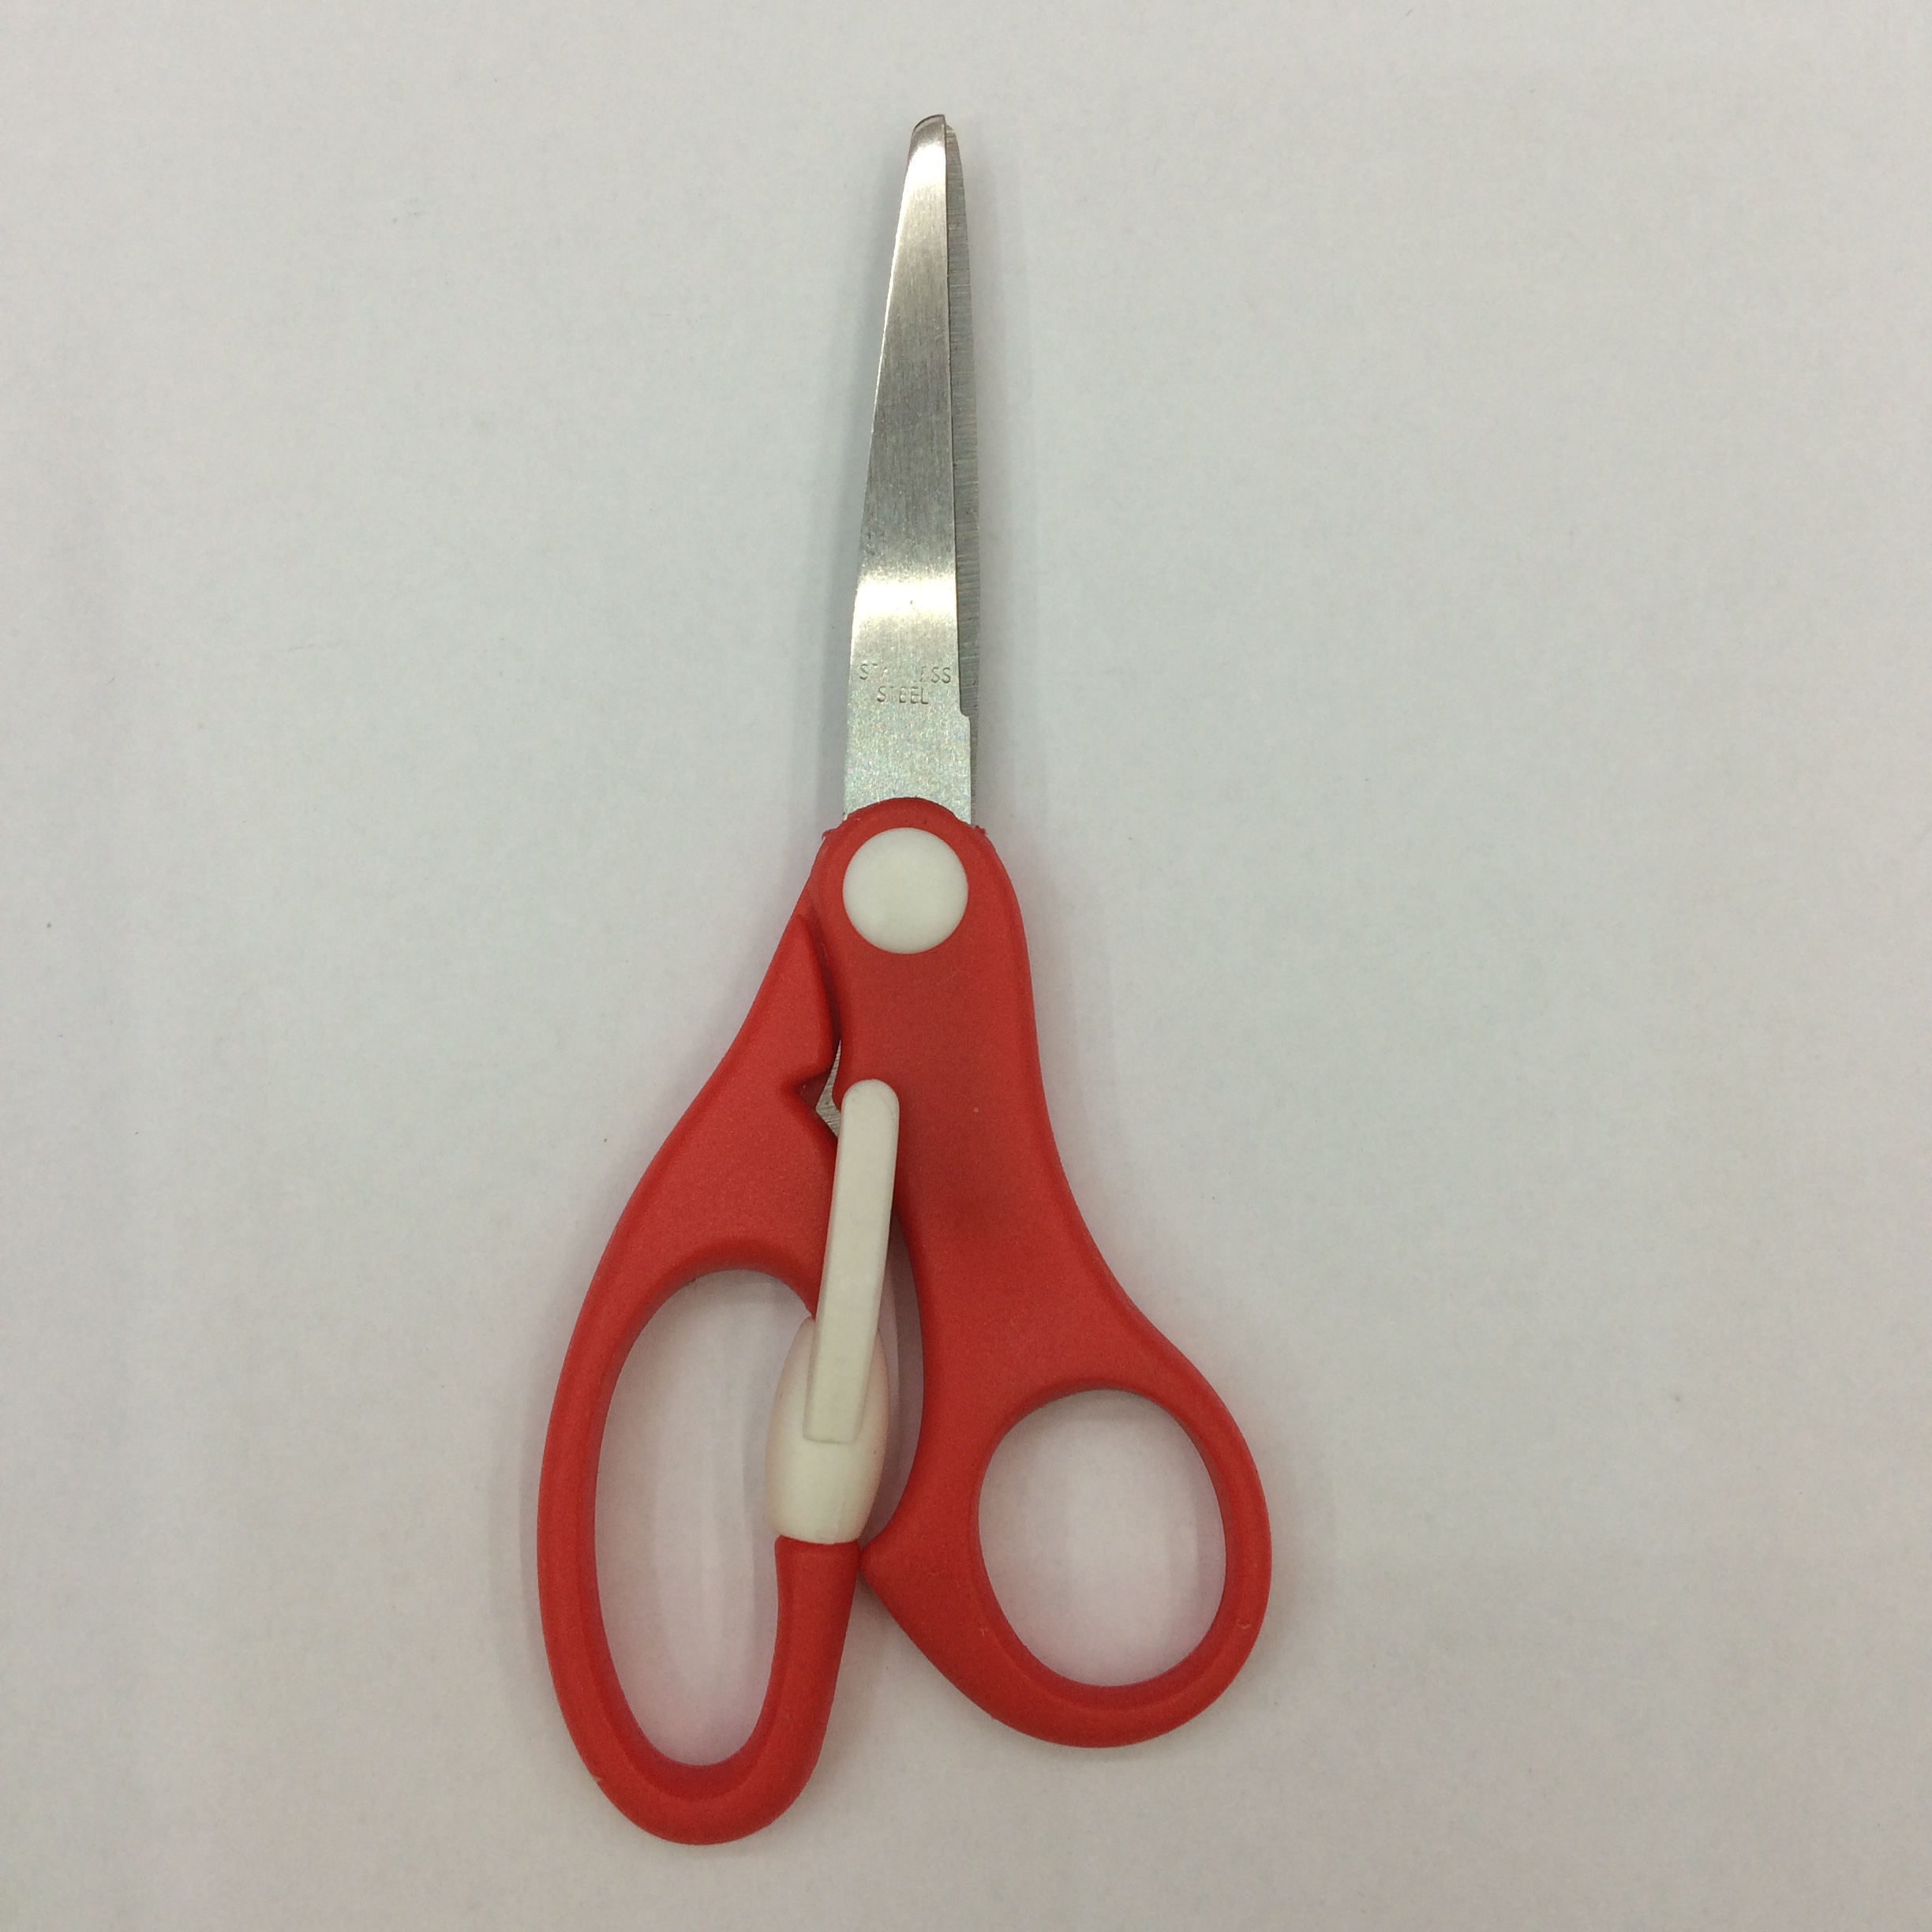 学生剪刀 剪纸剪刀 手工剪刀 剪刀